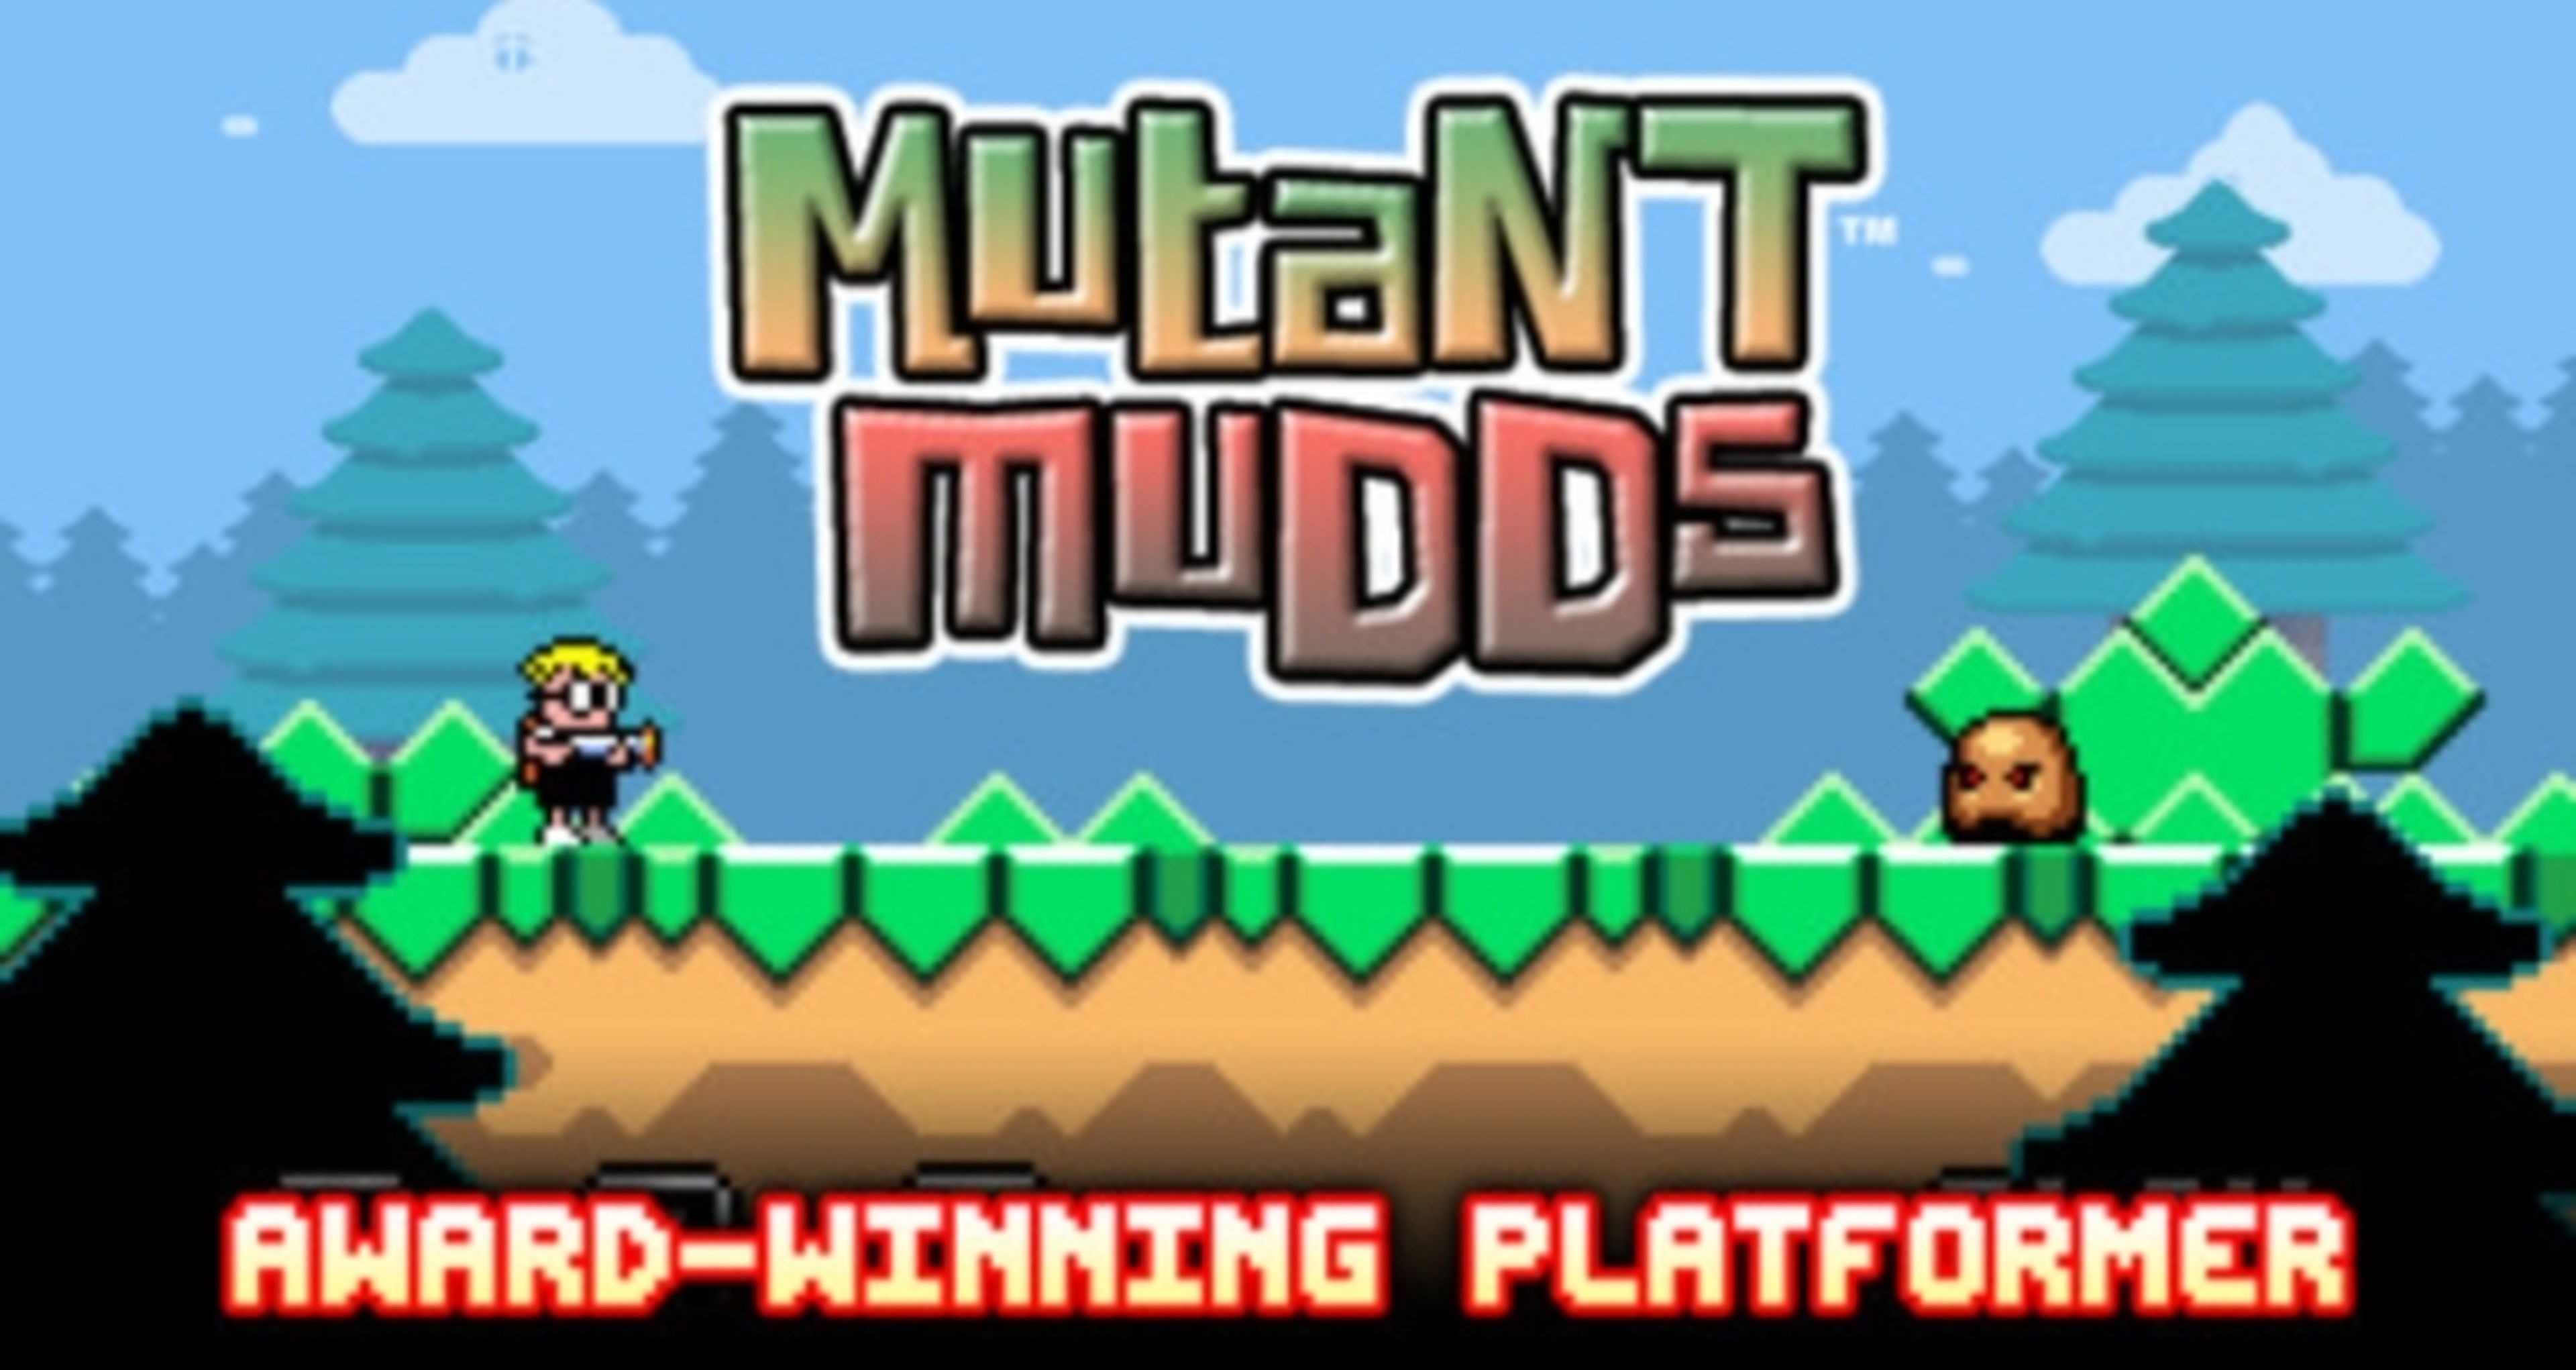 Mutant Mudds vende más en Wii U que en Steam, PS3 y Vita